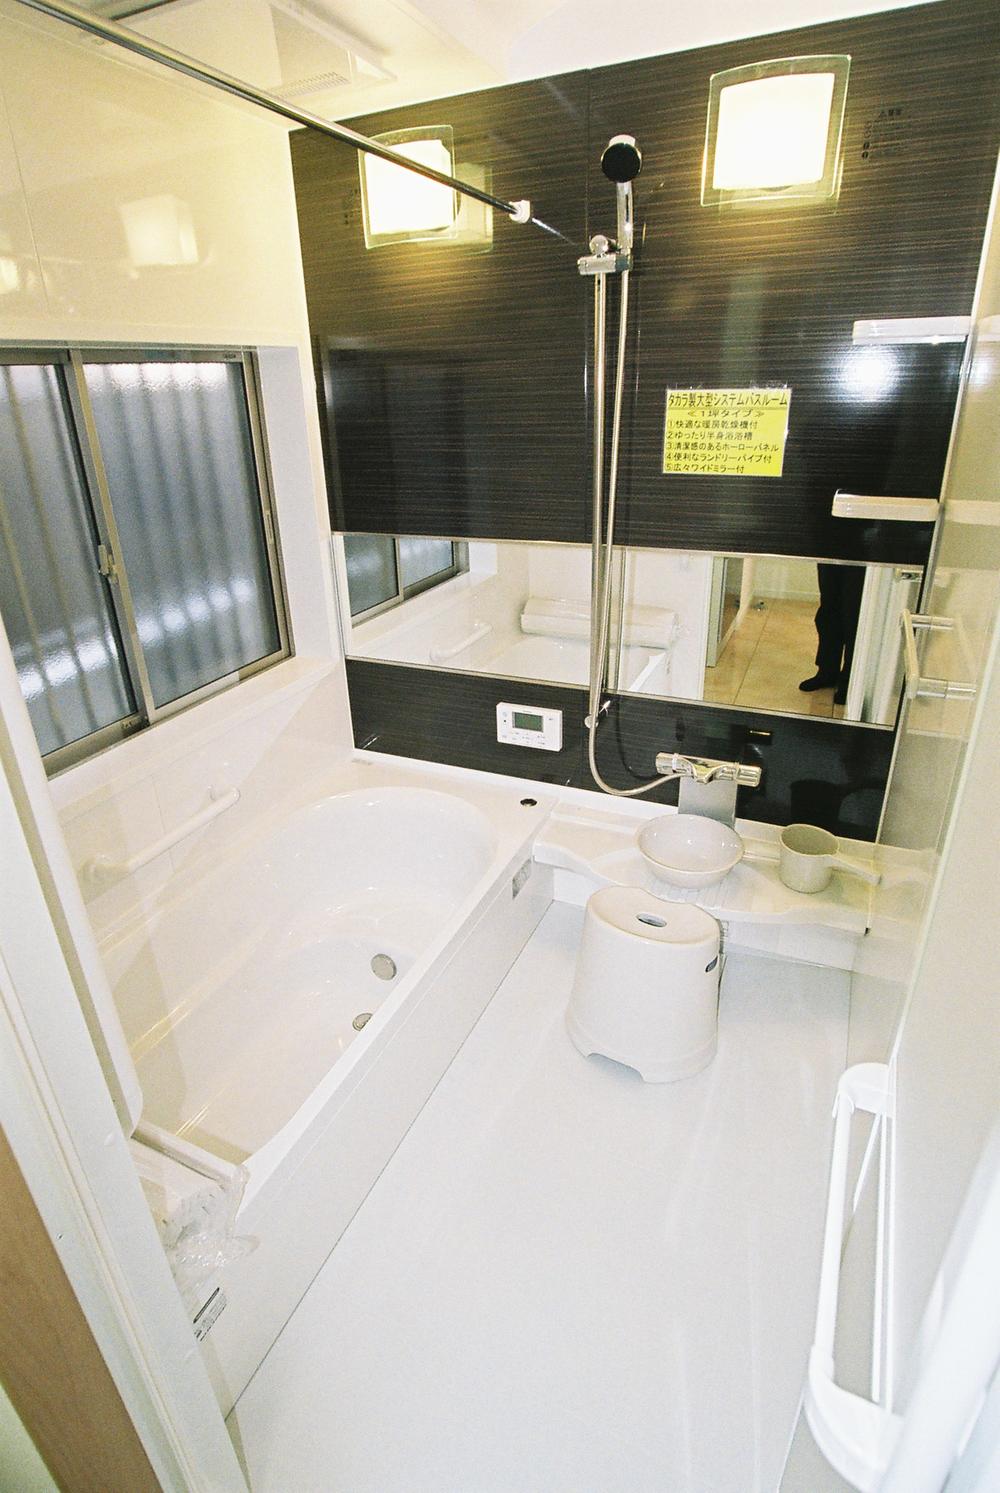 Bathroom. System bathroom with steel ventilation dryer Takara